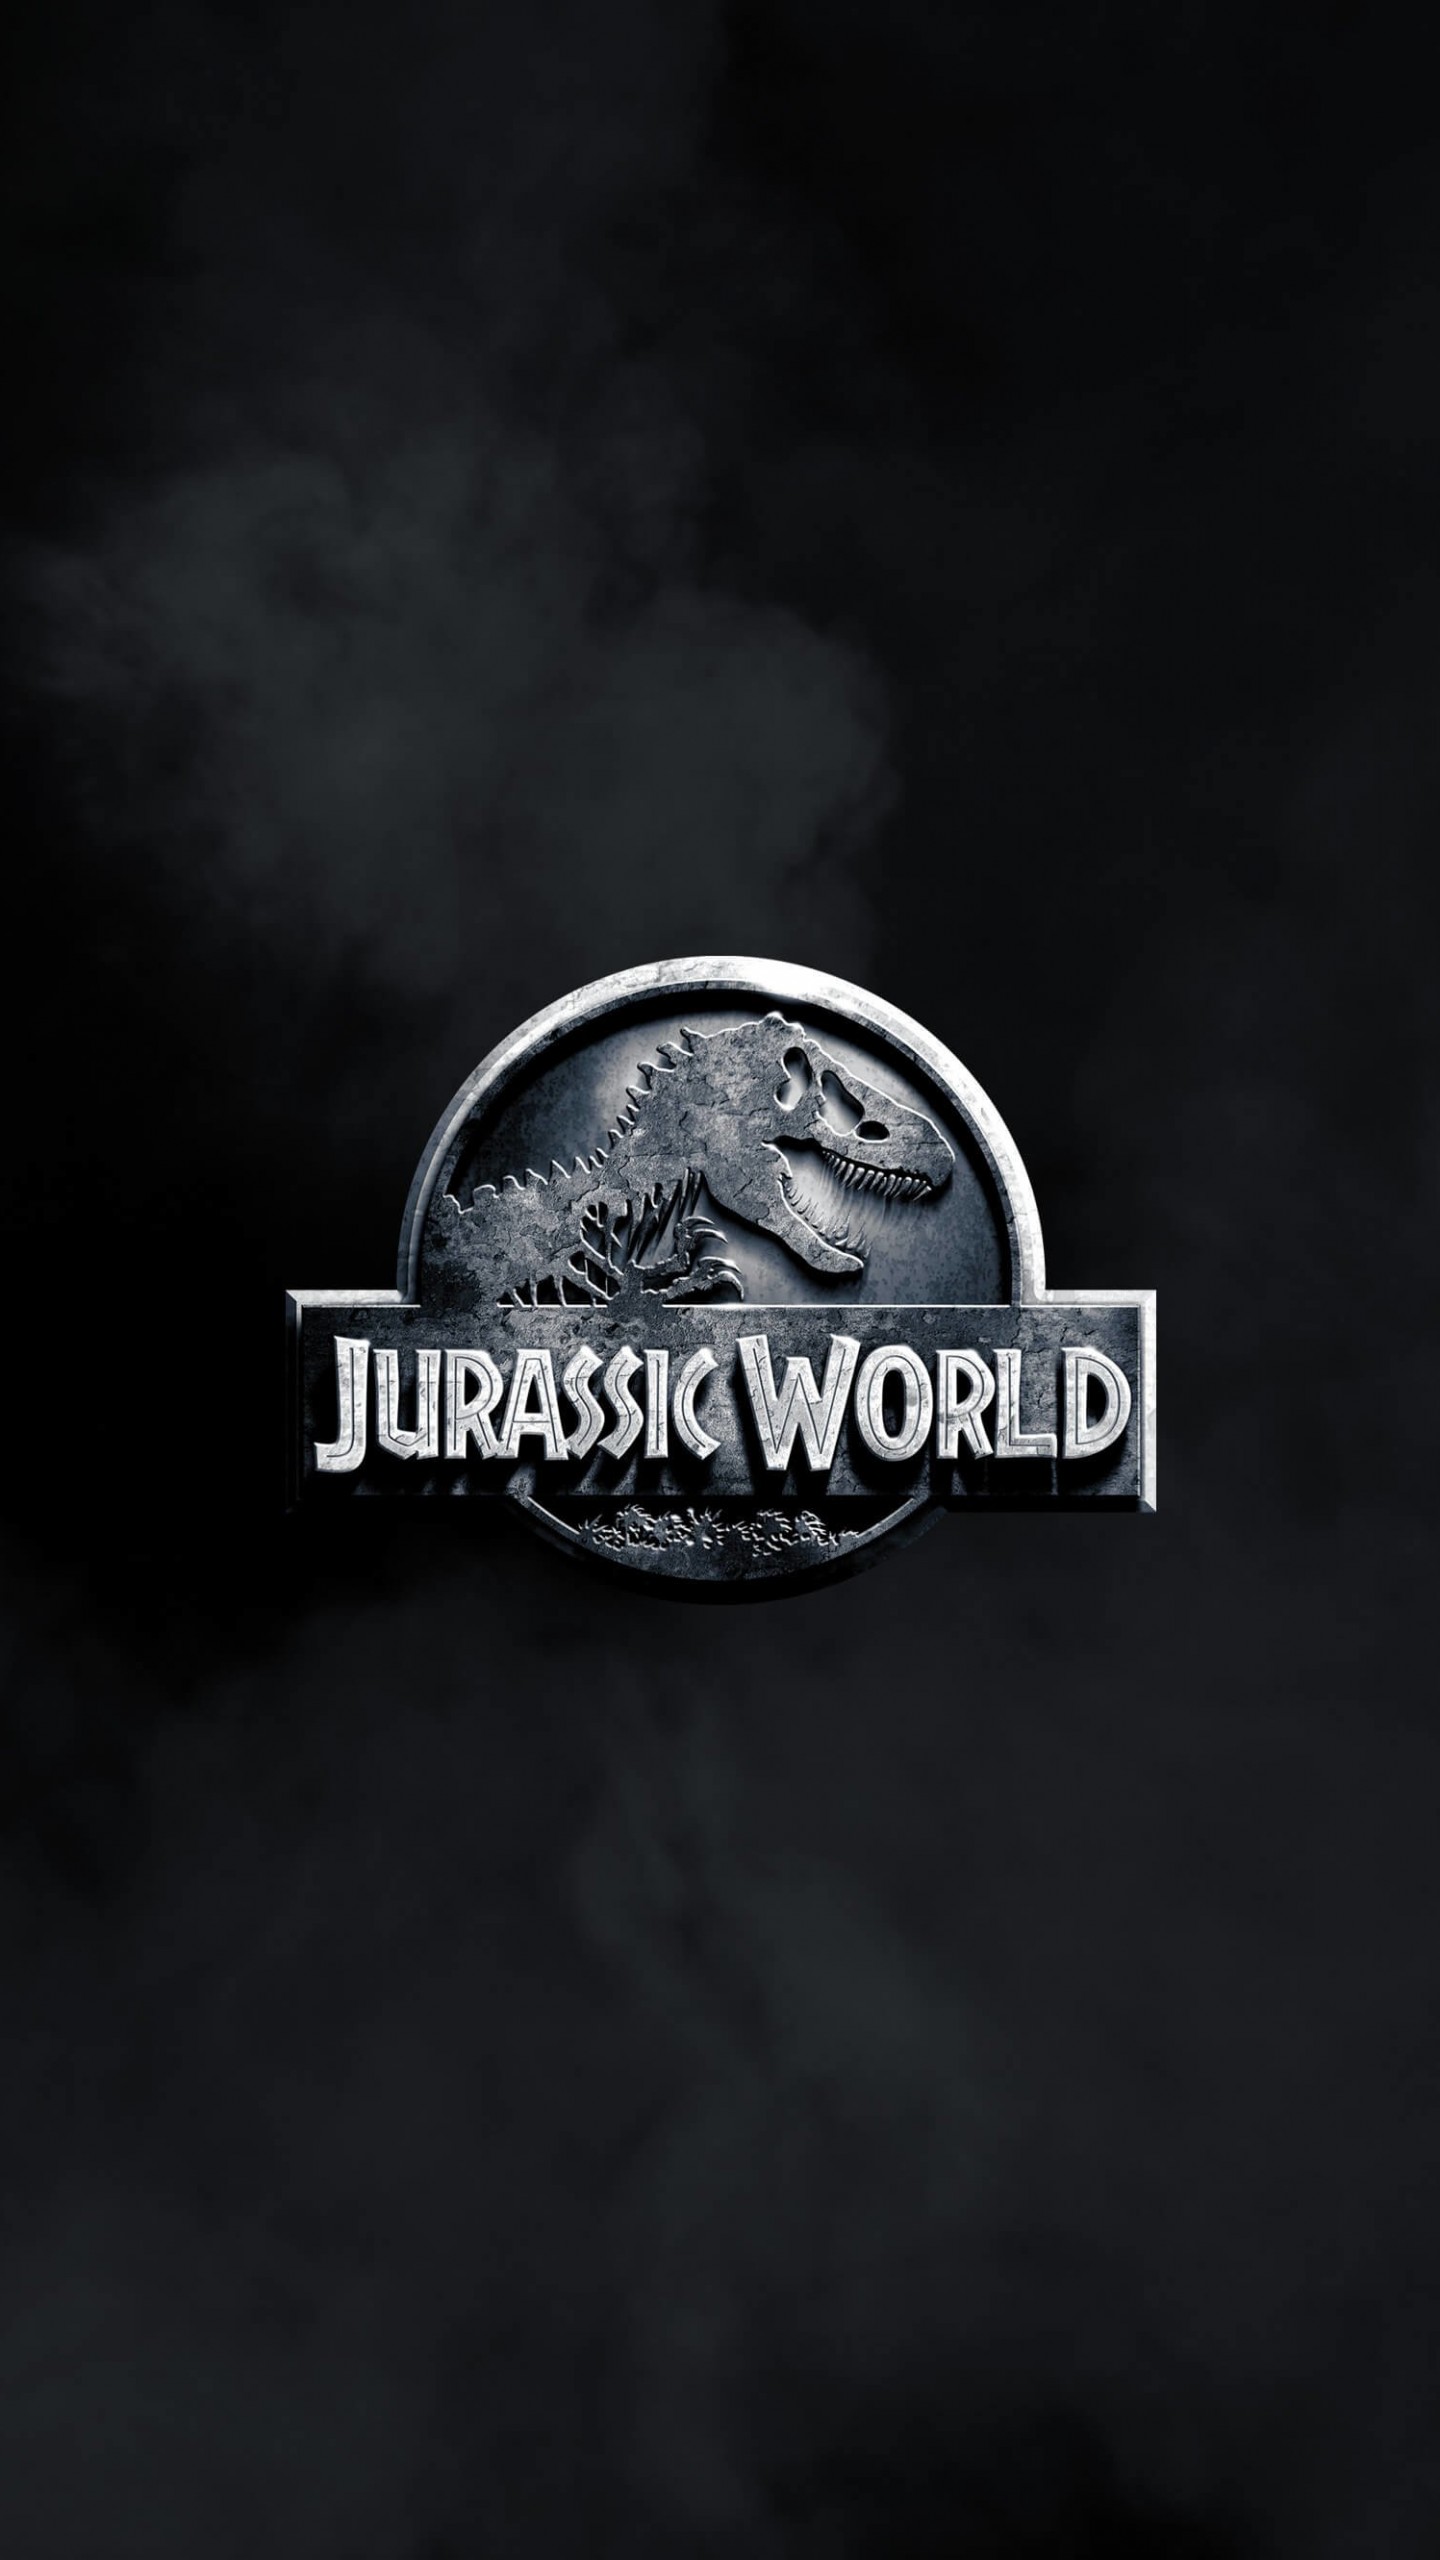 Jurassic World Wallpaper for LG G3